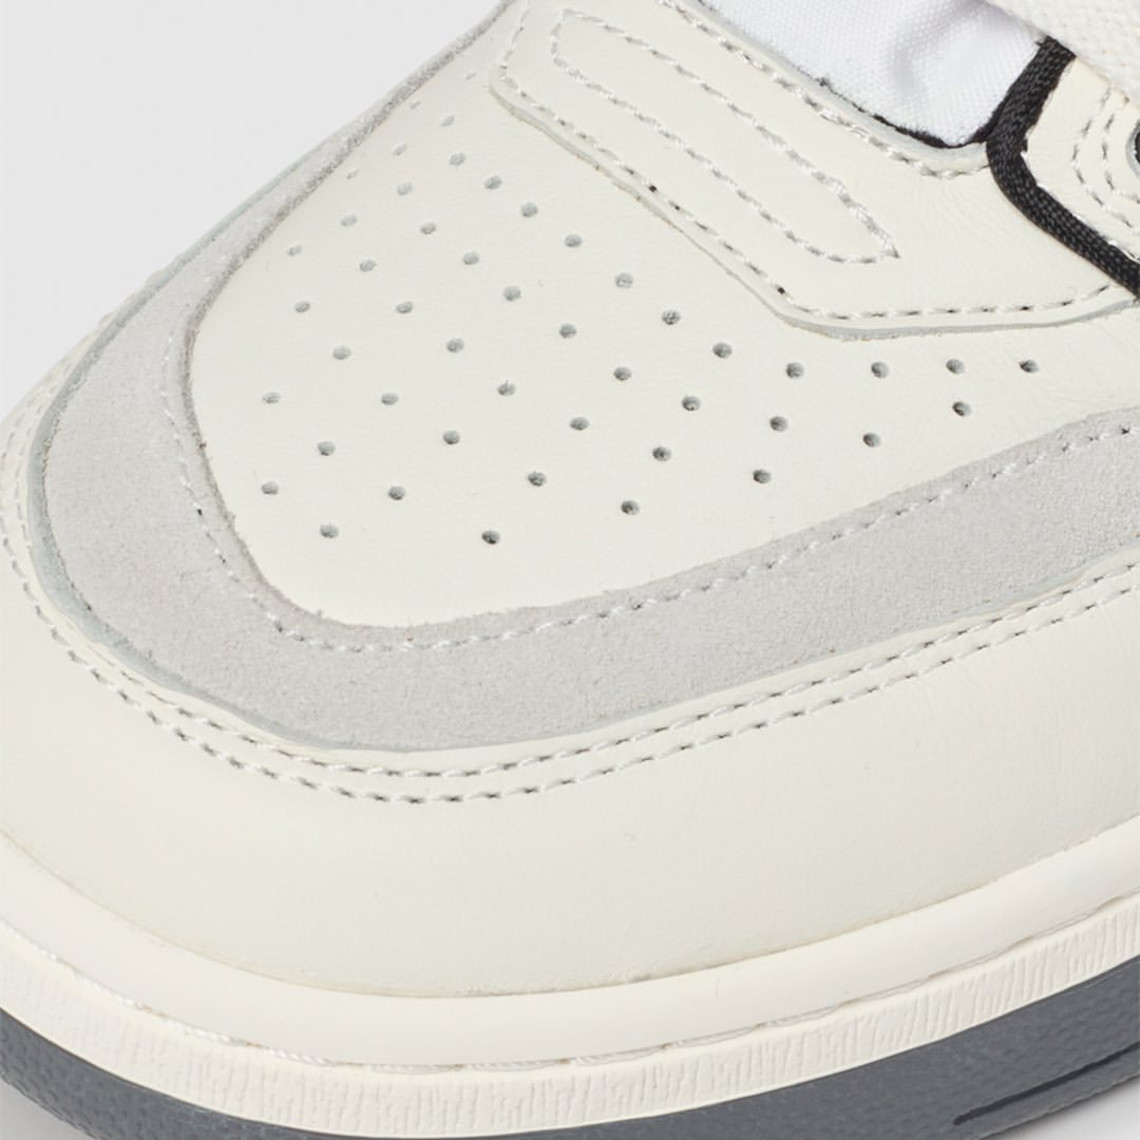 New Avia 880 OG High Top Basketball Shoe Sneaker Off White #879/1000 DS  W/Rec